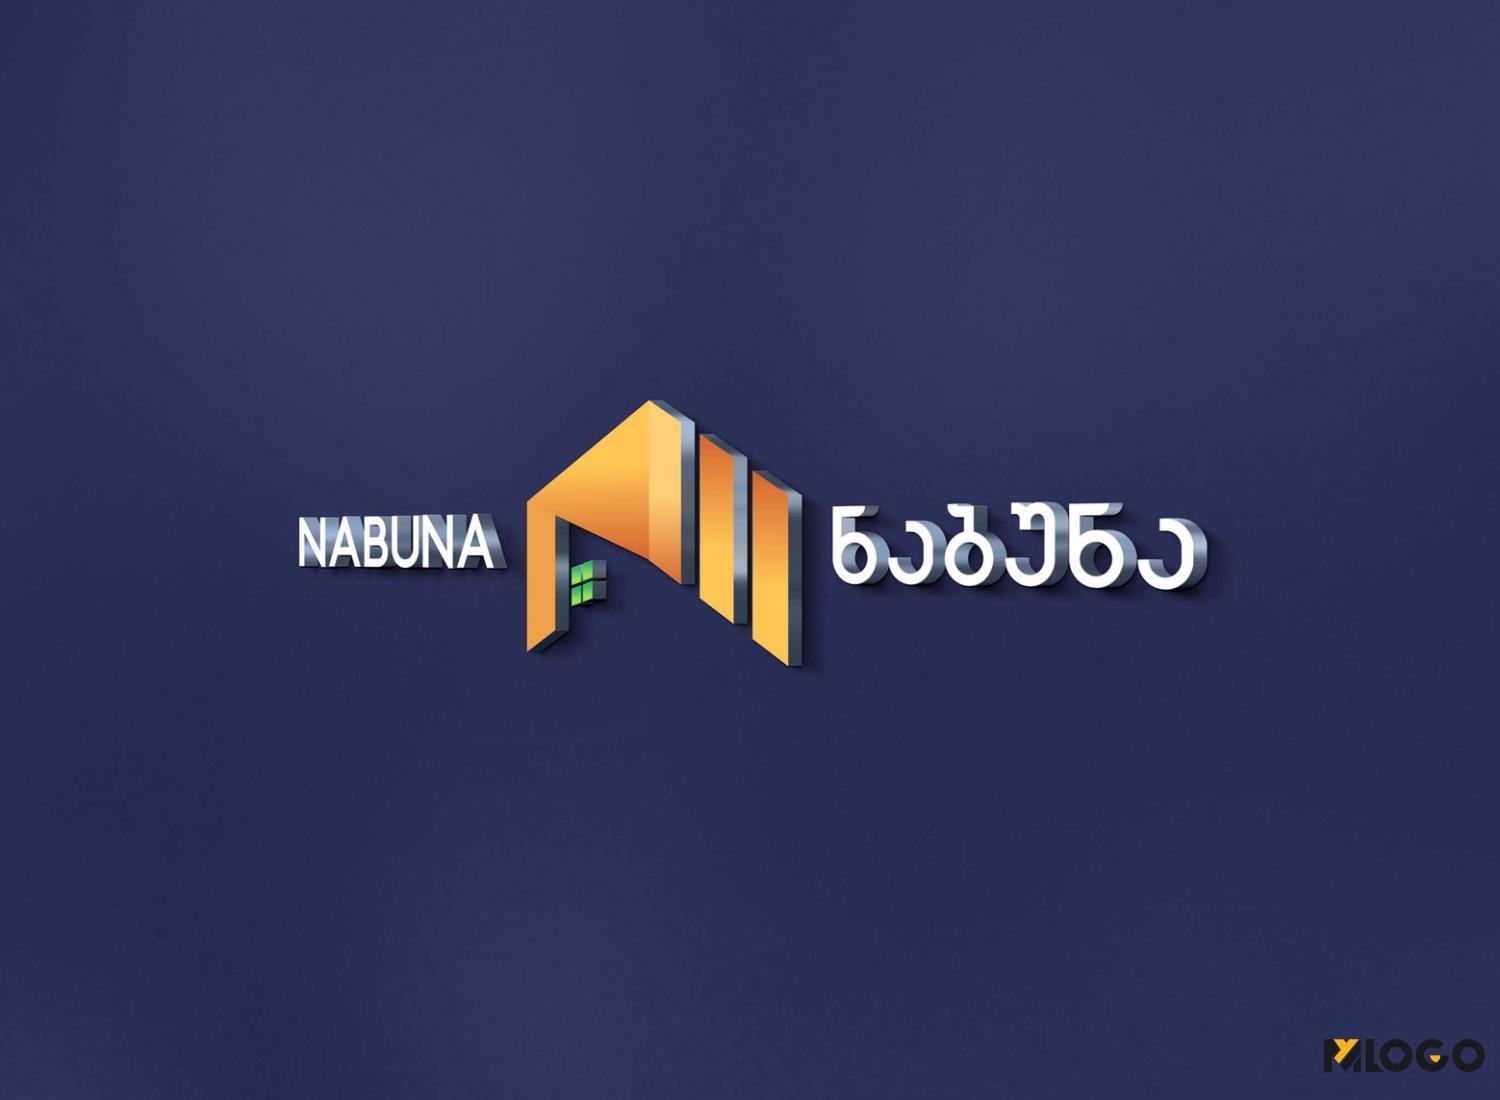 NABUNA - ნაბუნა